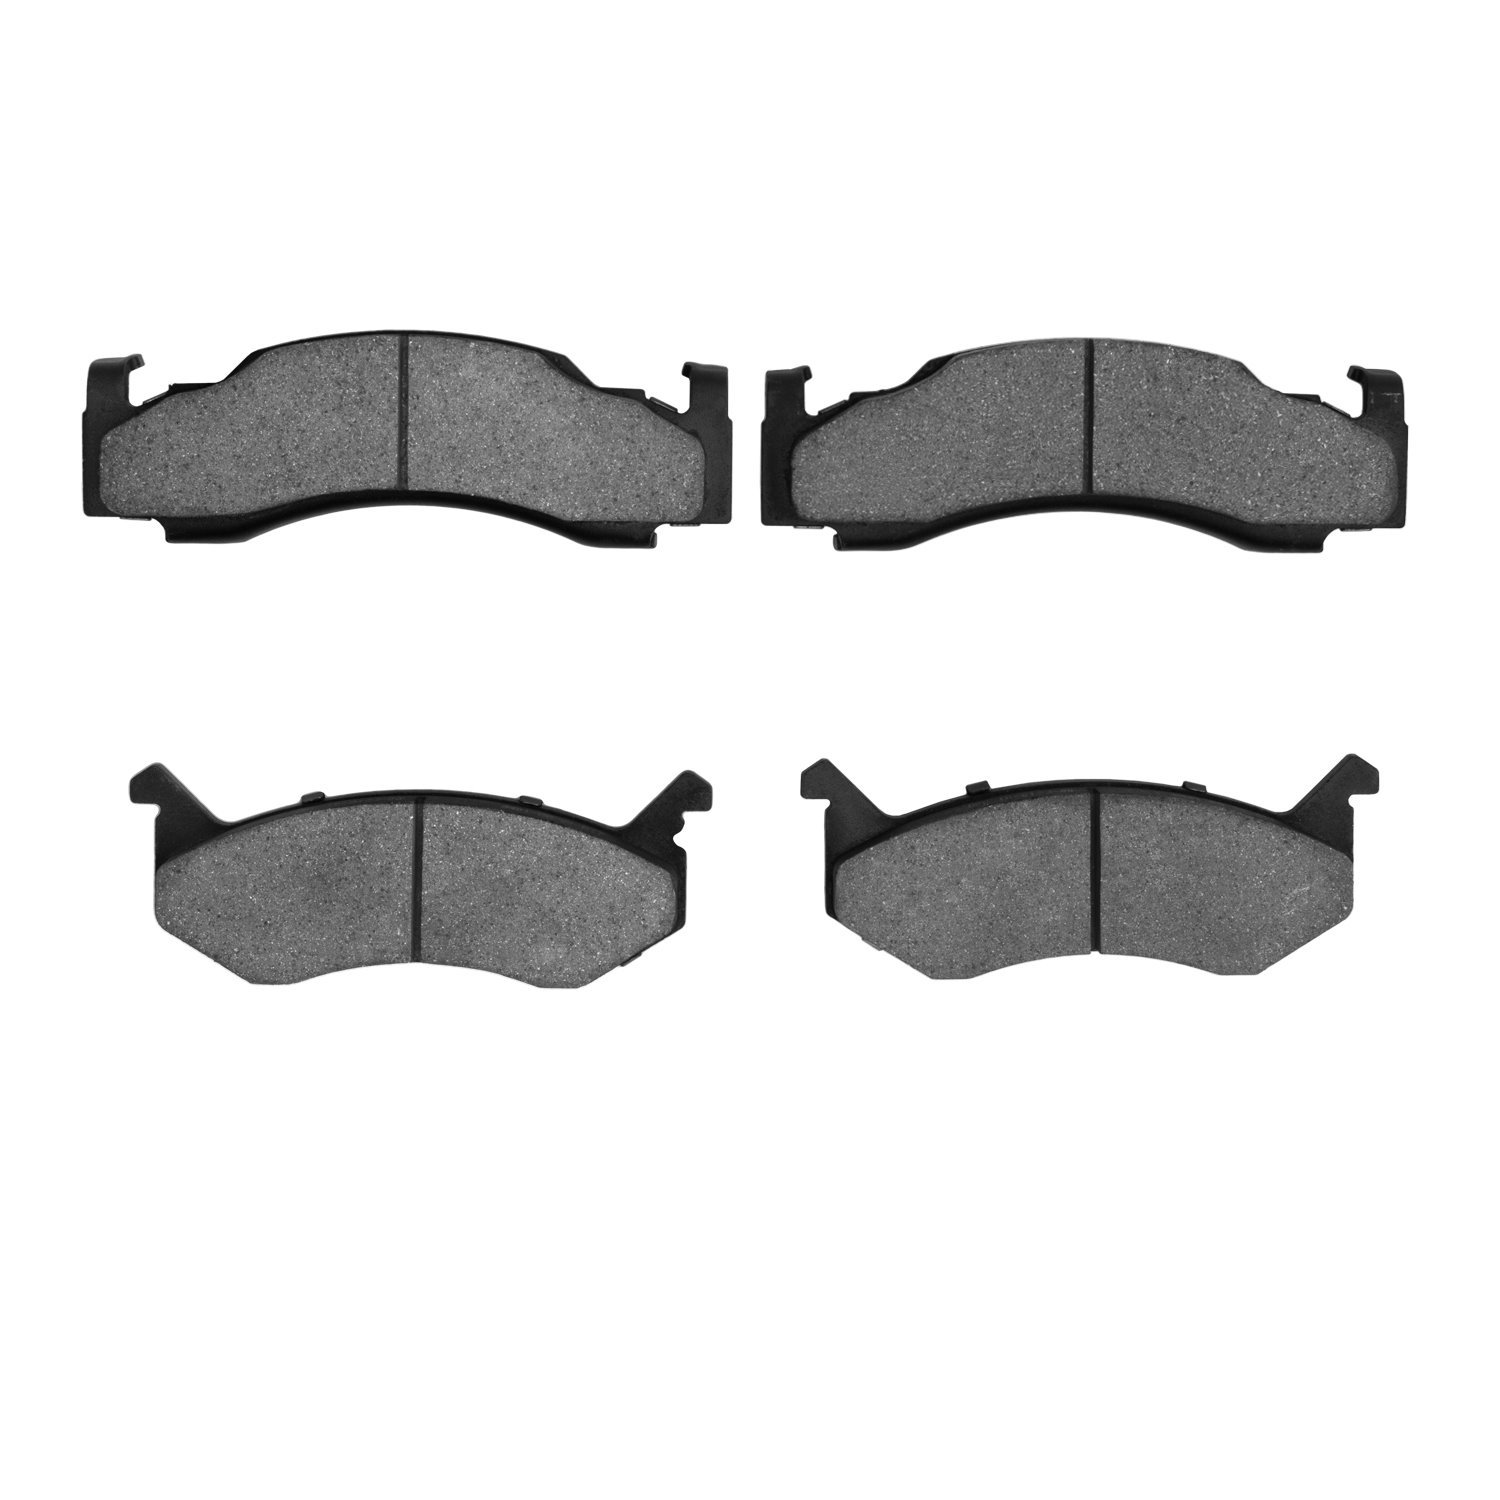 Ceramic Brake Pads, 1973-1997 Mopar, Position: Front